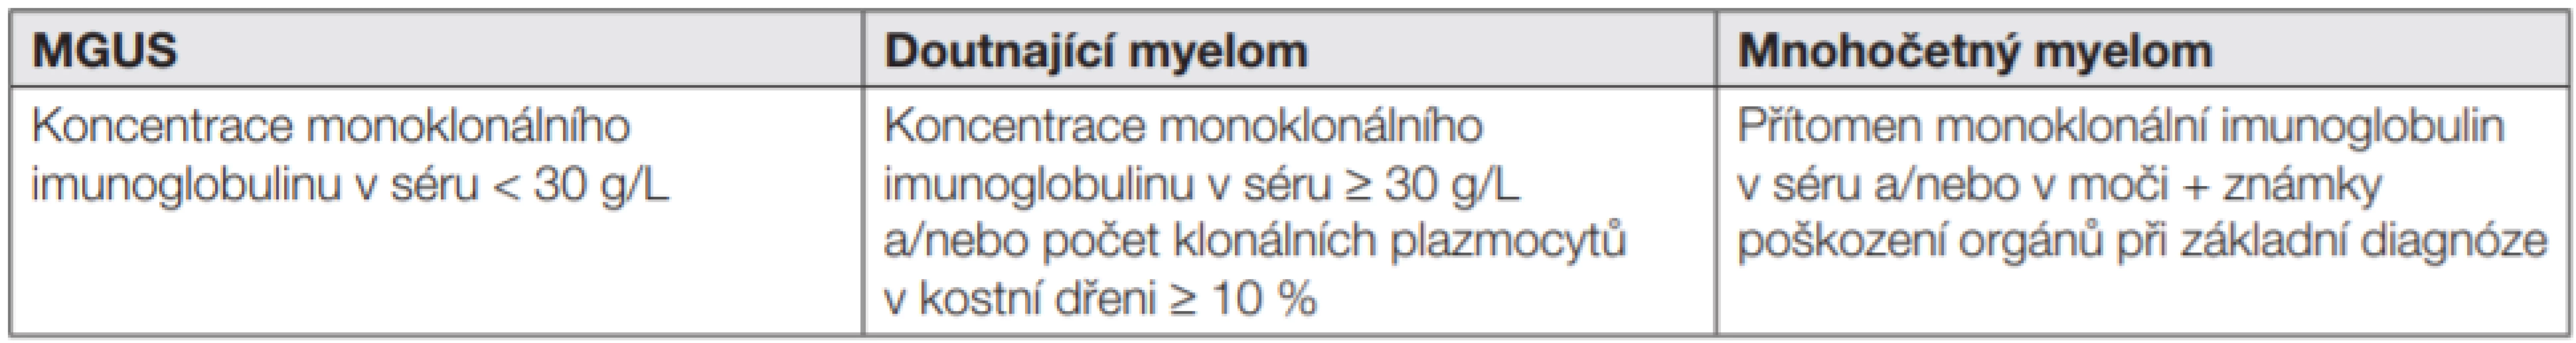 Srovnání kritérií MGUS, asymptomatického a symptomatického mnohočetného myelomu [5].